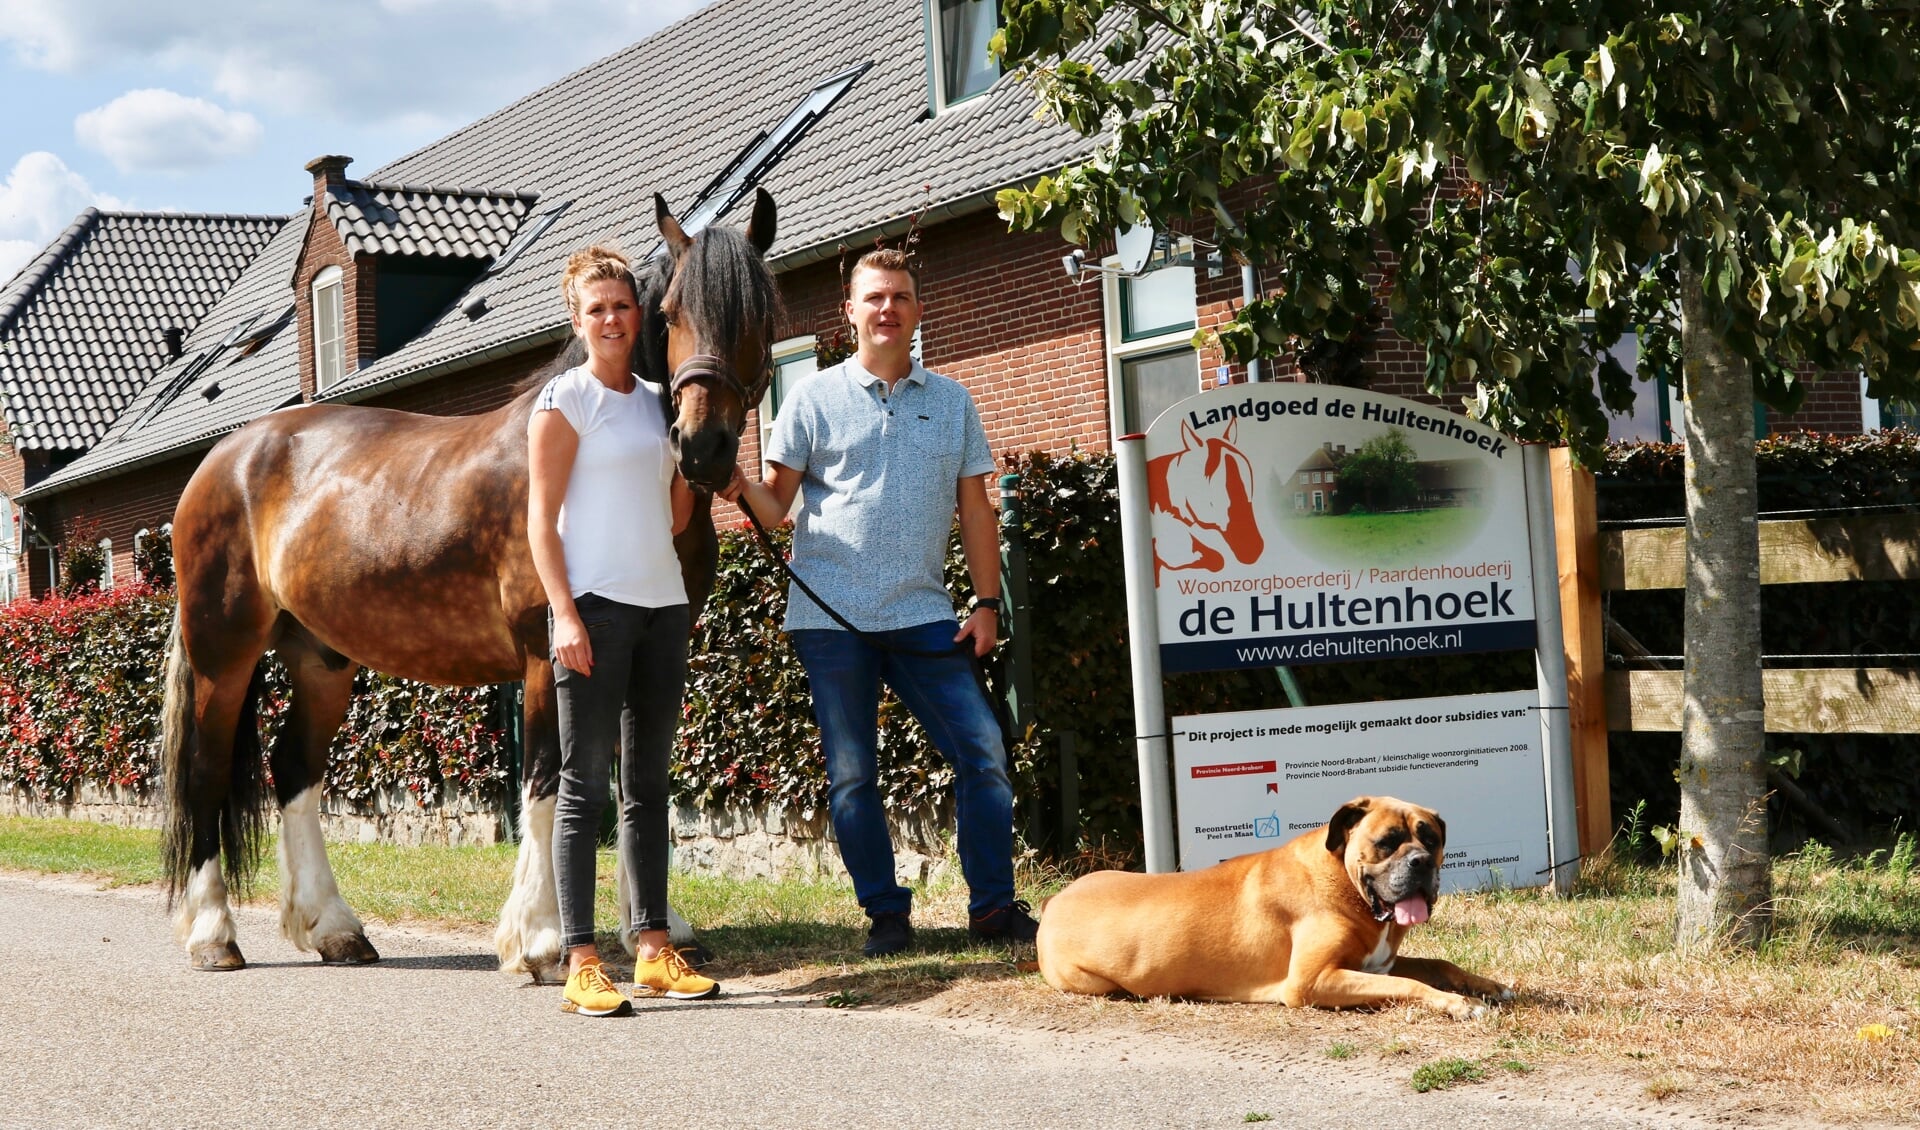 Nick Janssen en Anke Janssen-Theunissen samen met hun paard Hummer en hond Guus  zijn de eigenaren van Woonzorgboerderij annex Paardenhouderij de Hultenhoek te Groeningen, die inmiddels al 10 jaar bestaat. (foto: John Hoffman)